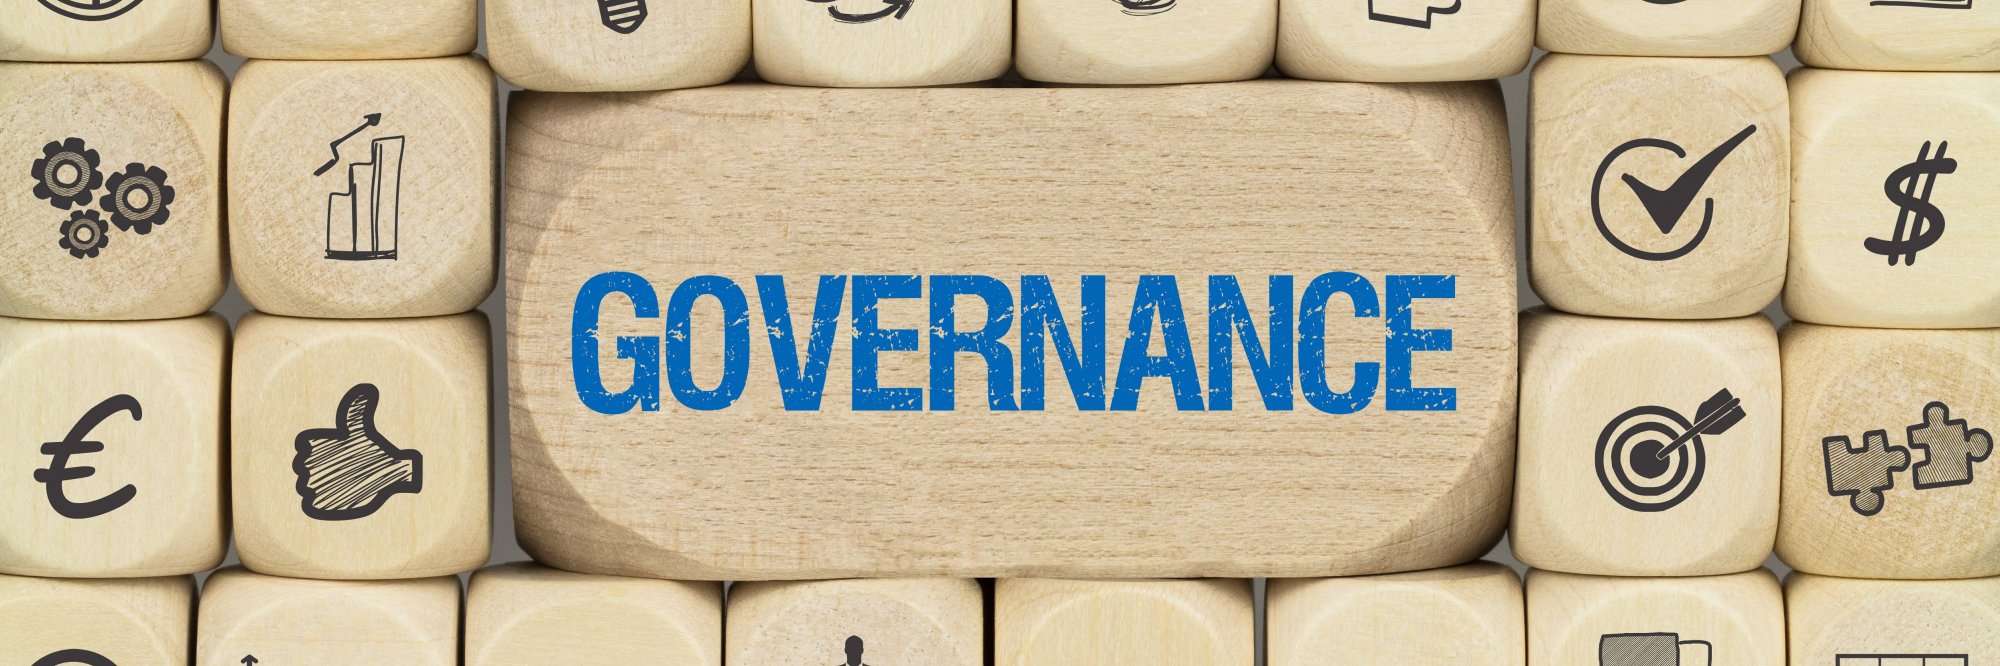 E-Learning on Good Governance